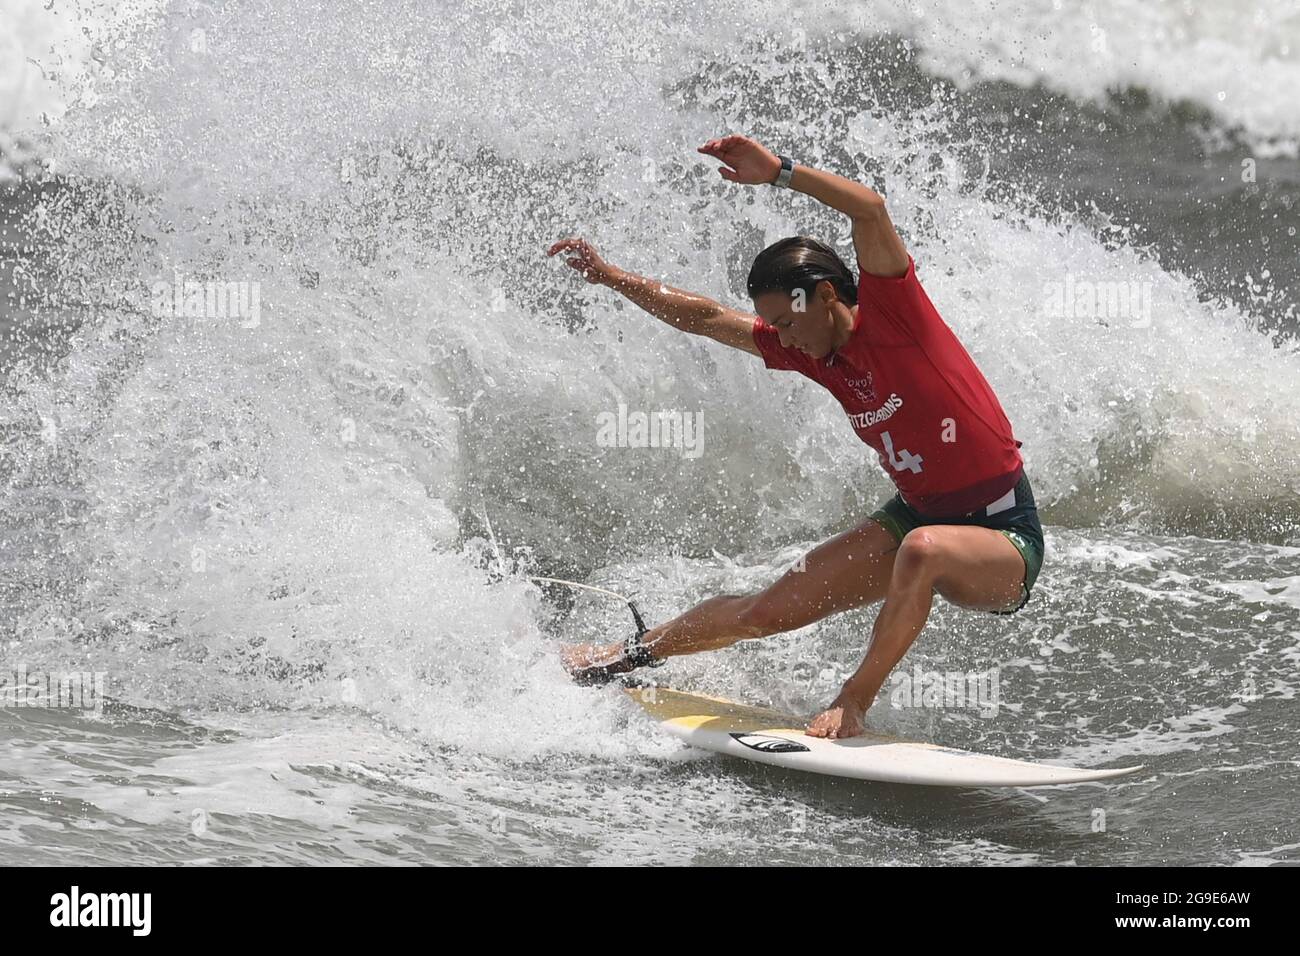 Chiba, Giappone. 26 luglio 2021. Sally Fitzgibbons of Australia compete durante Tokyo 2020 Women's round 3 calore di surf a Tsurigasaki Surfing Beach nella prefettura di Chiba, Giappone, 26 luglio 2021. Credit: Du Yu/Xinhua/Alamy Live News Foto Stock